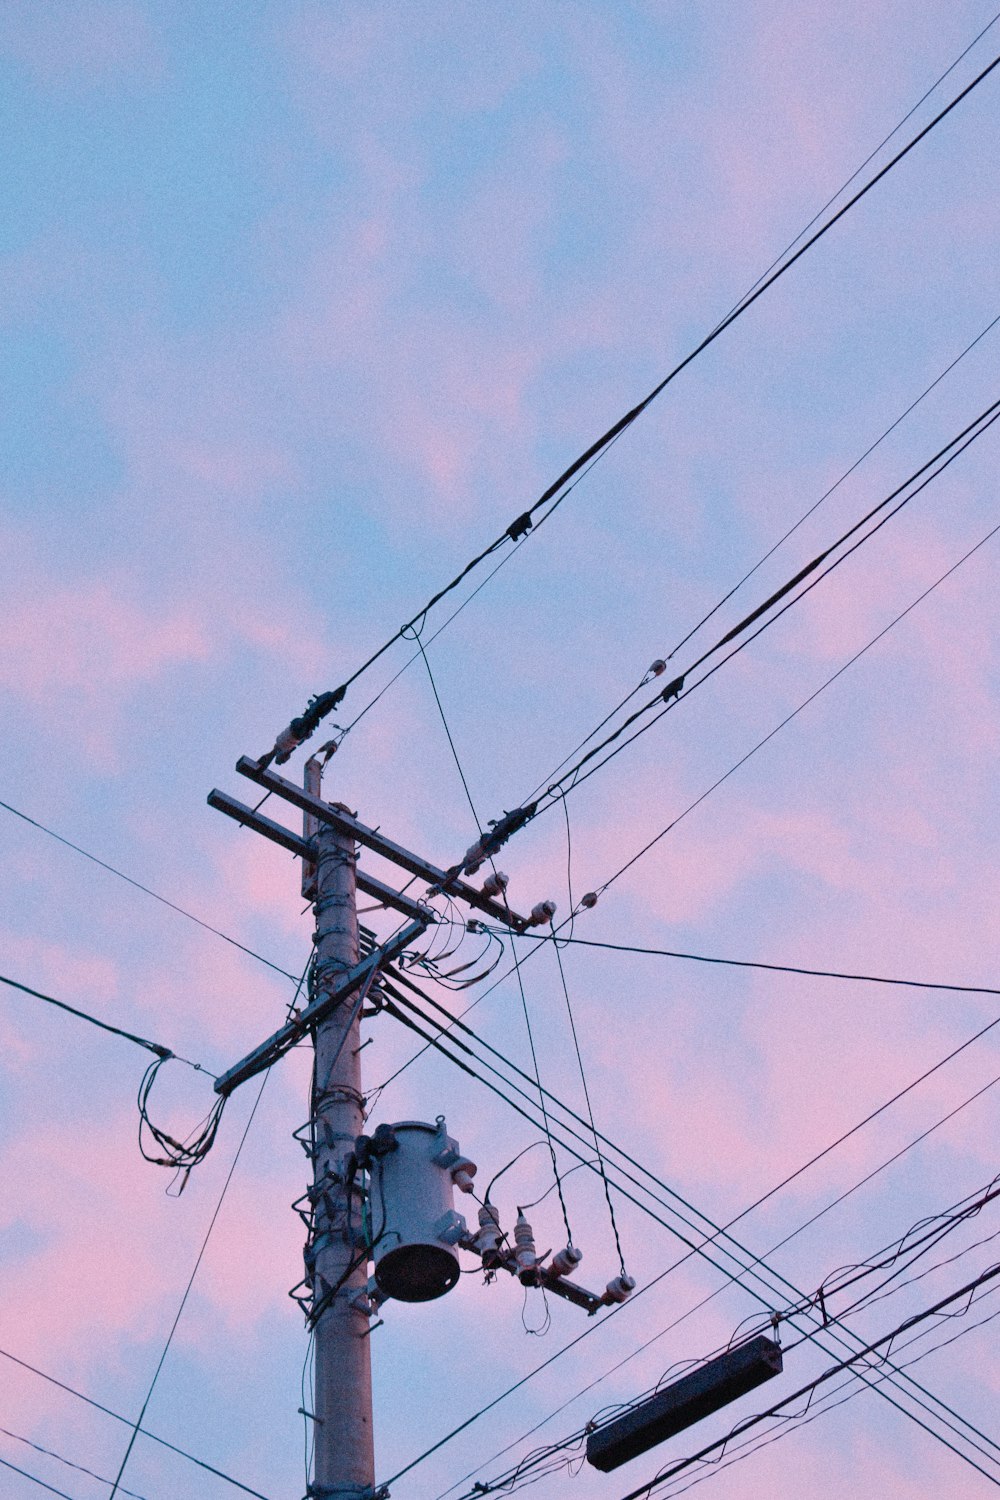 poste elétrico preto sob o céu azul